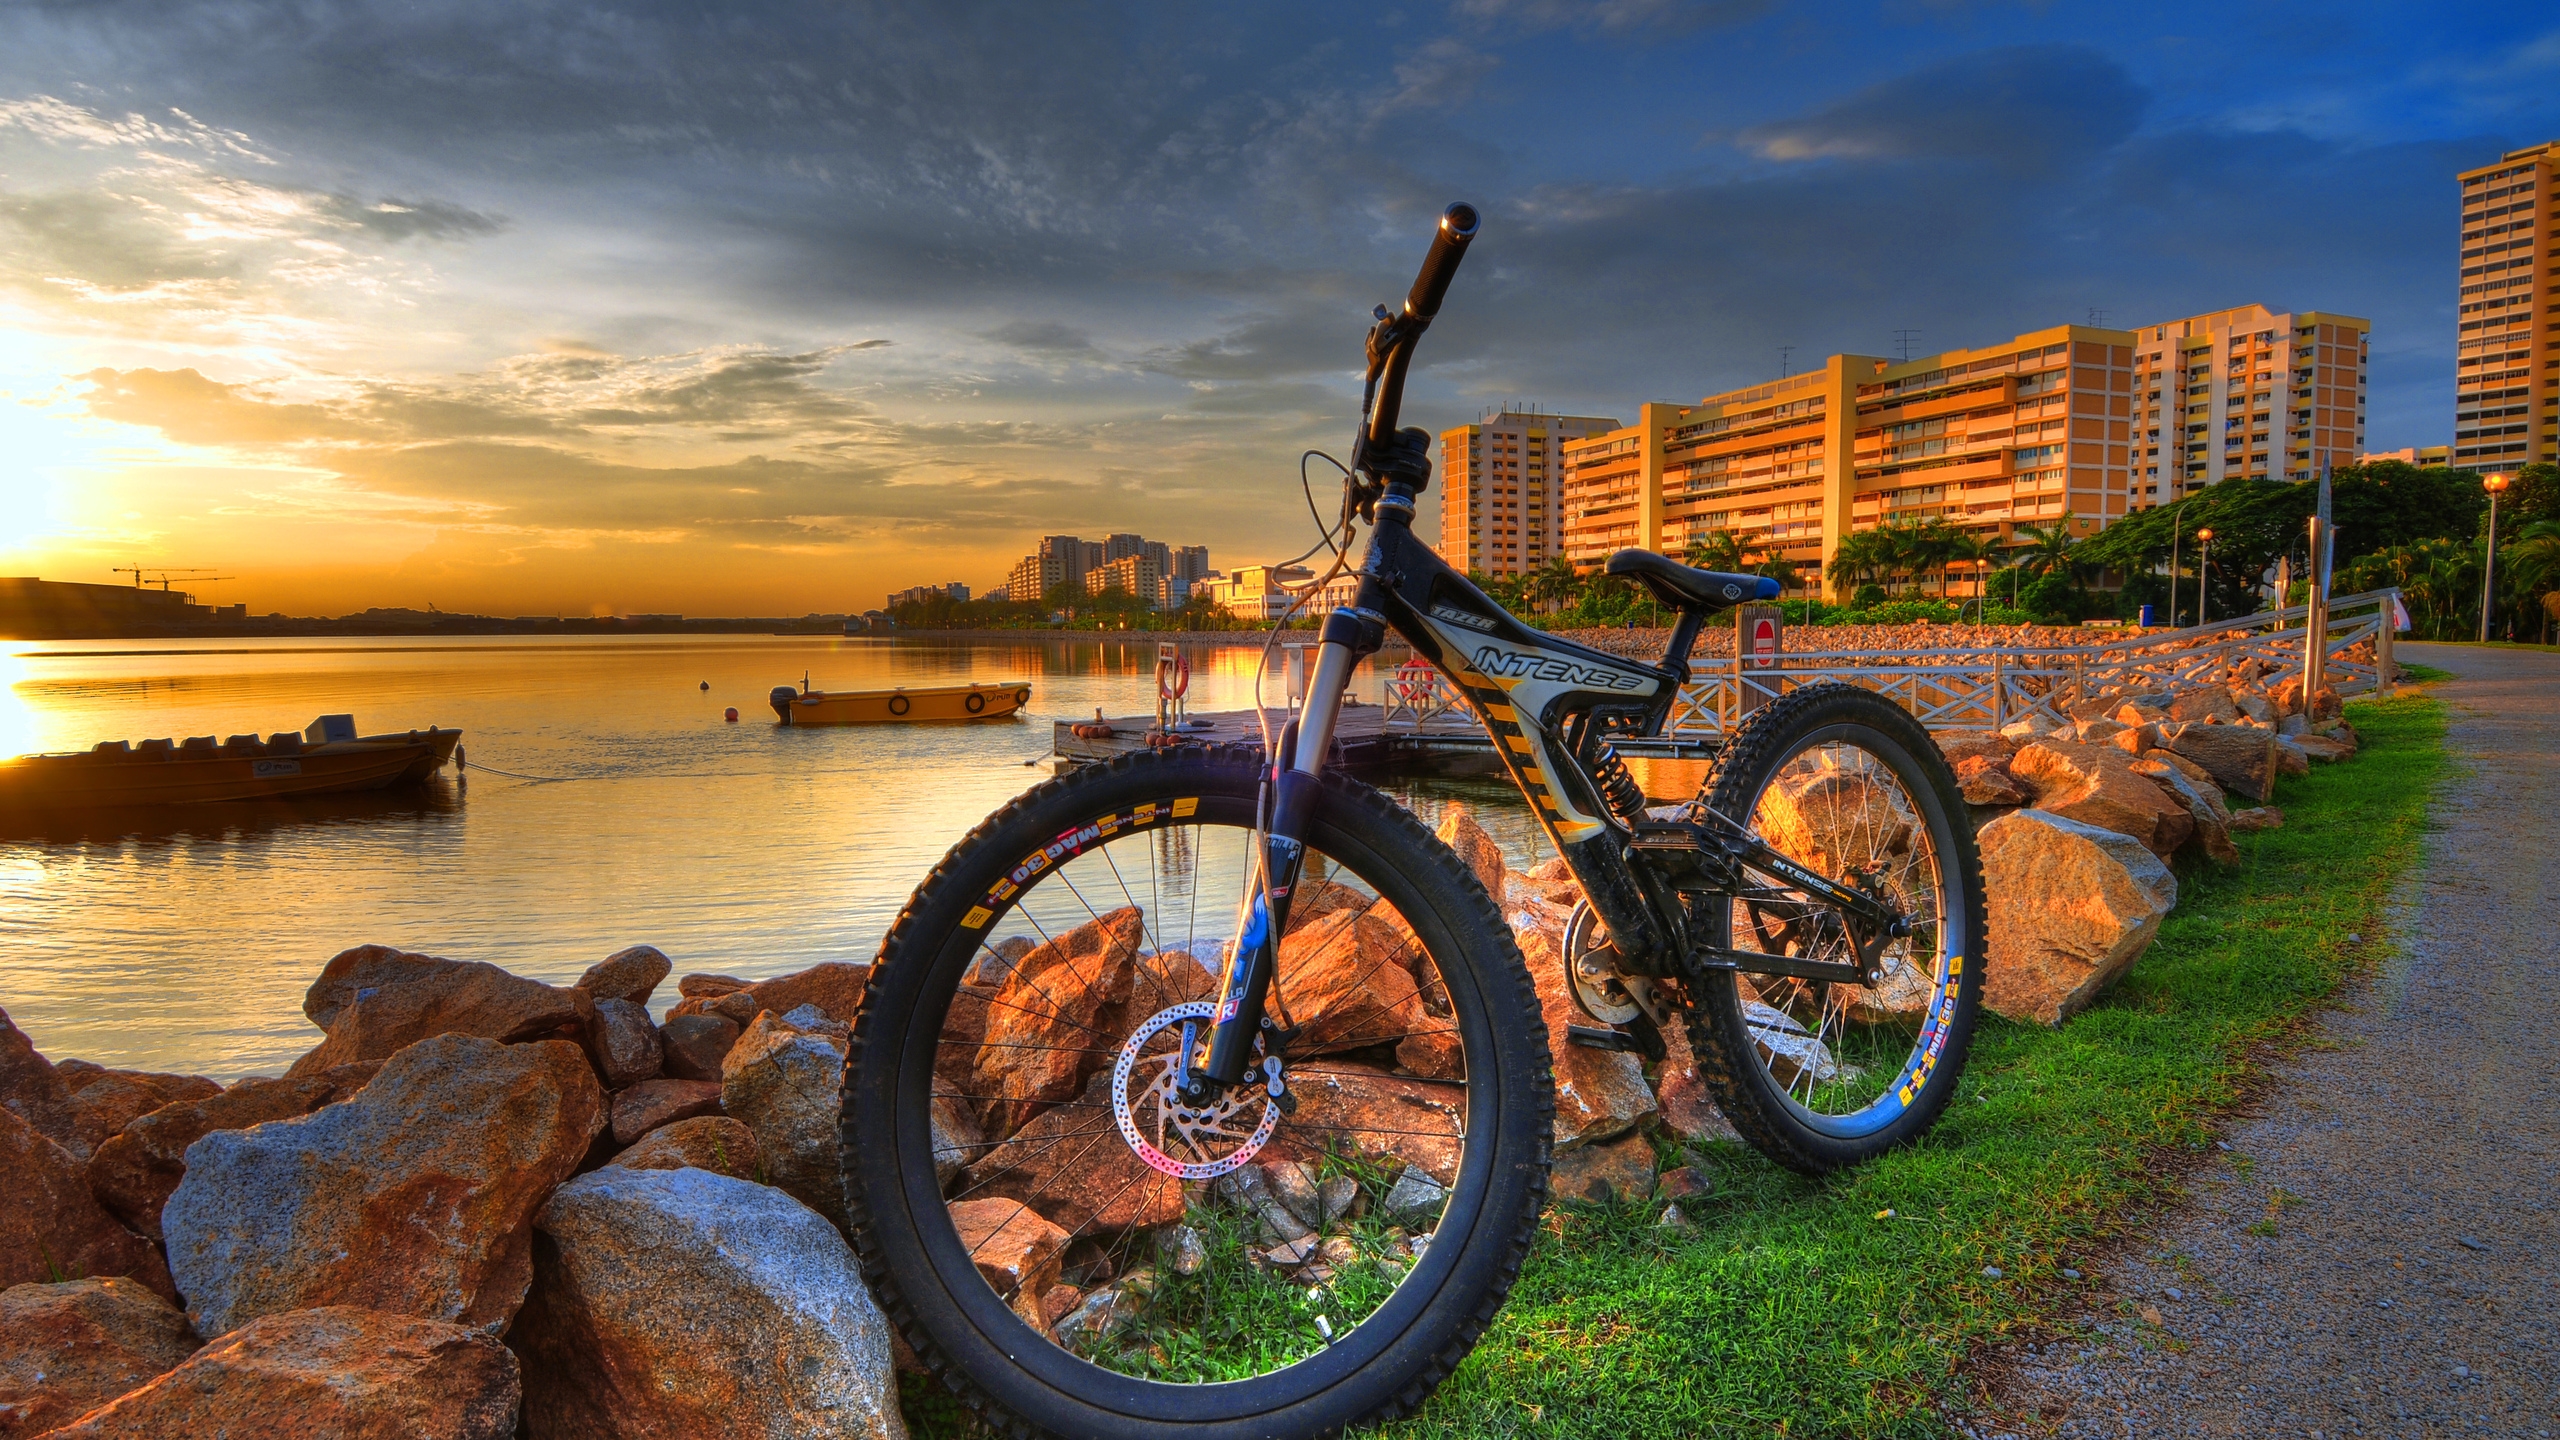 HDR City Bike for 2560x1440 HDTV resolution